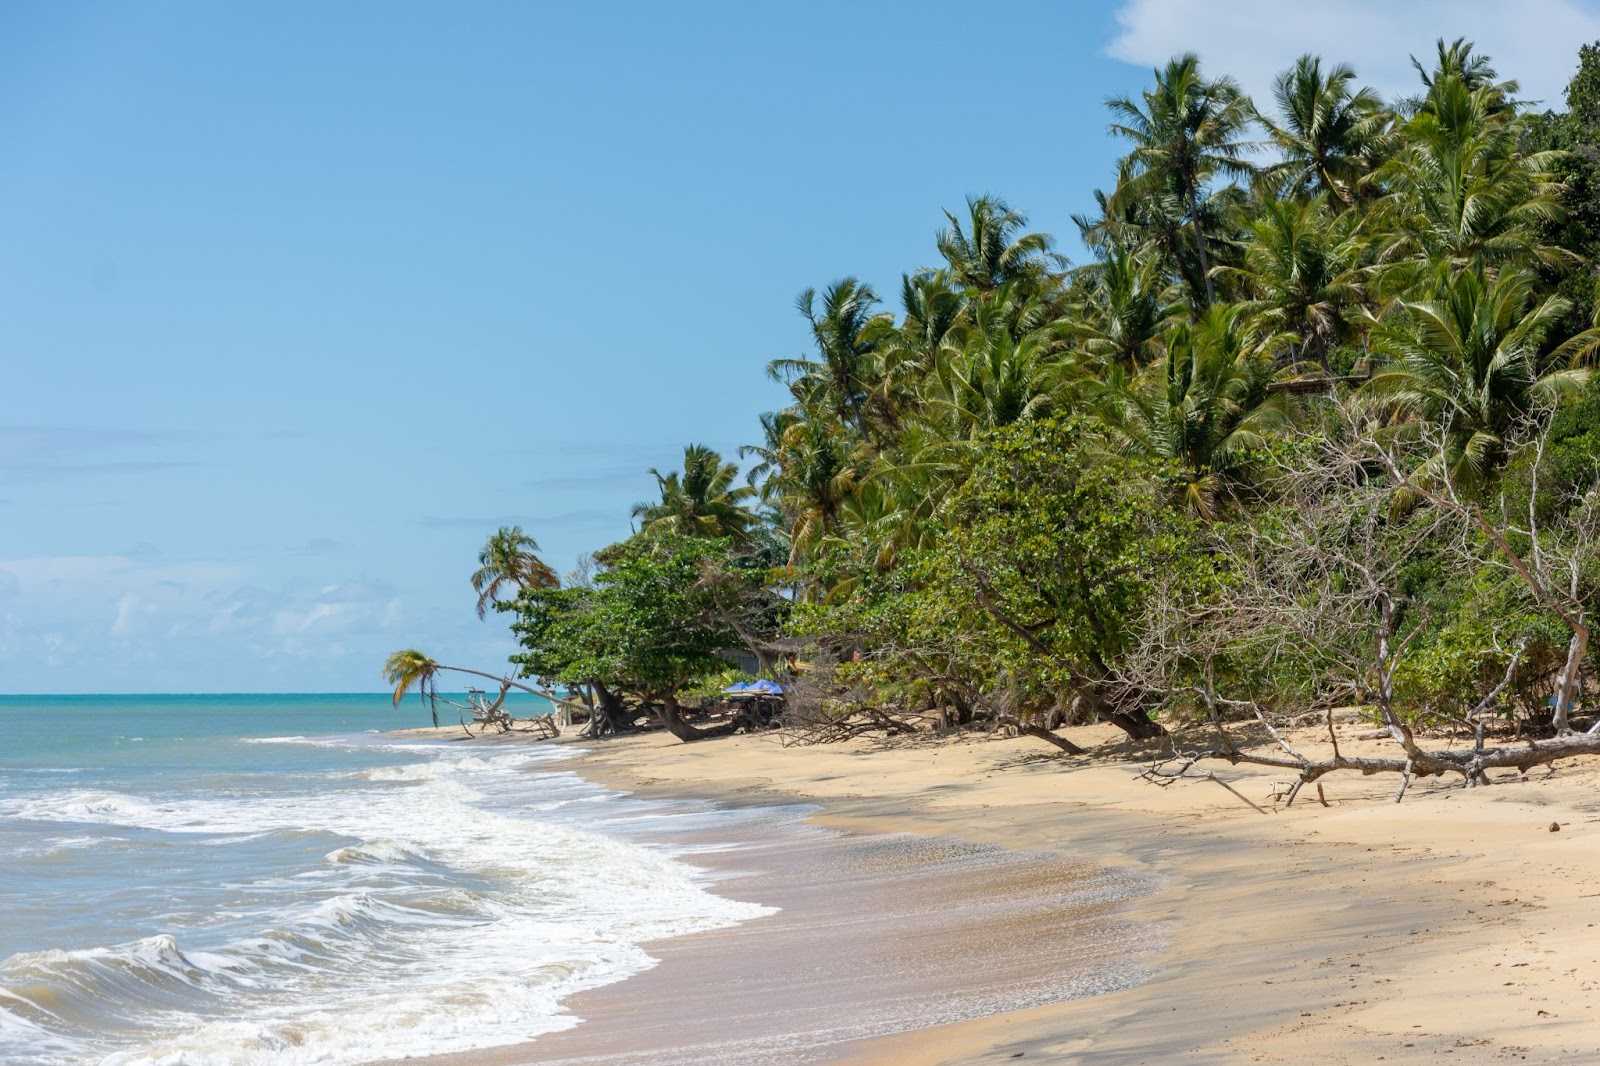 Praia com o mar cristalino ao lado esquerdo, de frente às árvores da vegetação nativa na pequena faixa de areia.